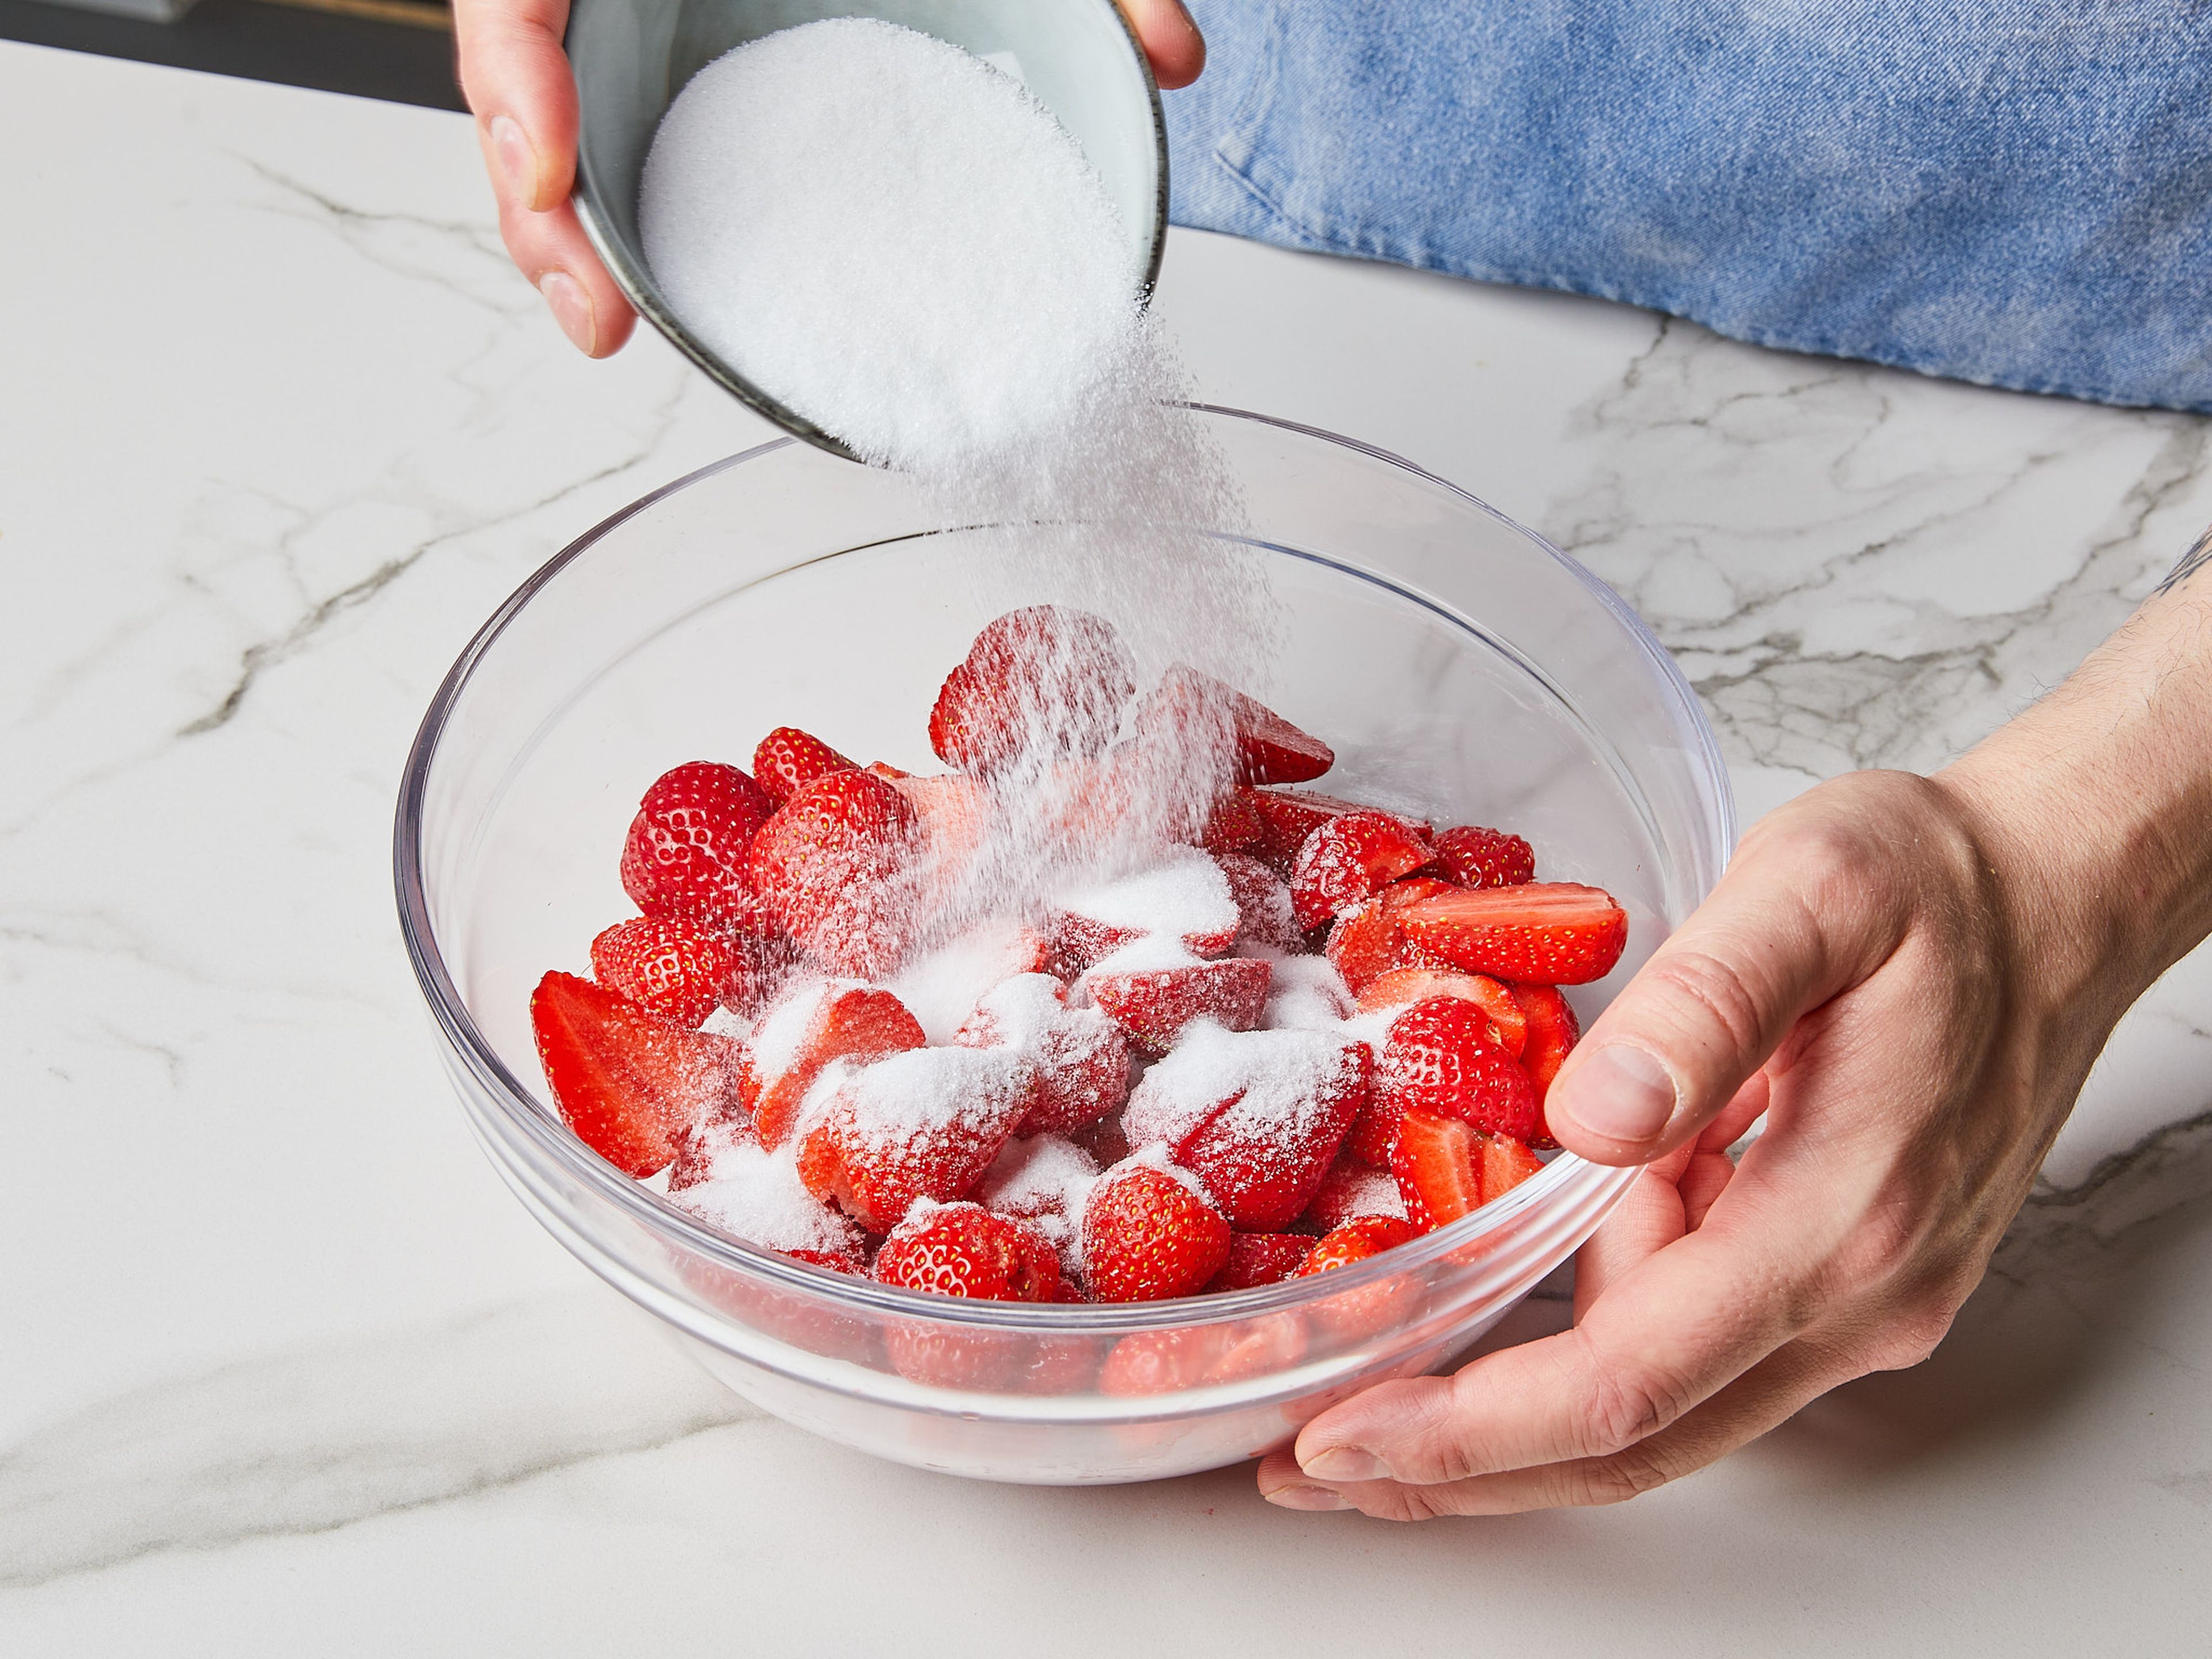 Ein paar Erdbeeren zum Garnieren beiseite legen. Die restlichen Erdbeeren entstielen, vierteln oder halbieren und in eine große Schüssel geben. Zucker über die Erdbeeren streuen, leicht schwenken und ca. 10 Min. ziehen lassen, bis sich der Zucker aufgelöst hat. Dann die Hälfte des Weißweins dazugeben und zugedeckt mindestens 1 Std. oder über Nacht im Kühlschrank ziehen lassen.